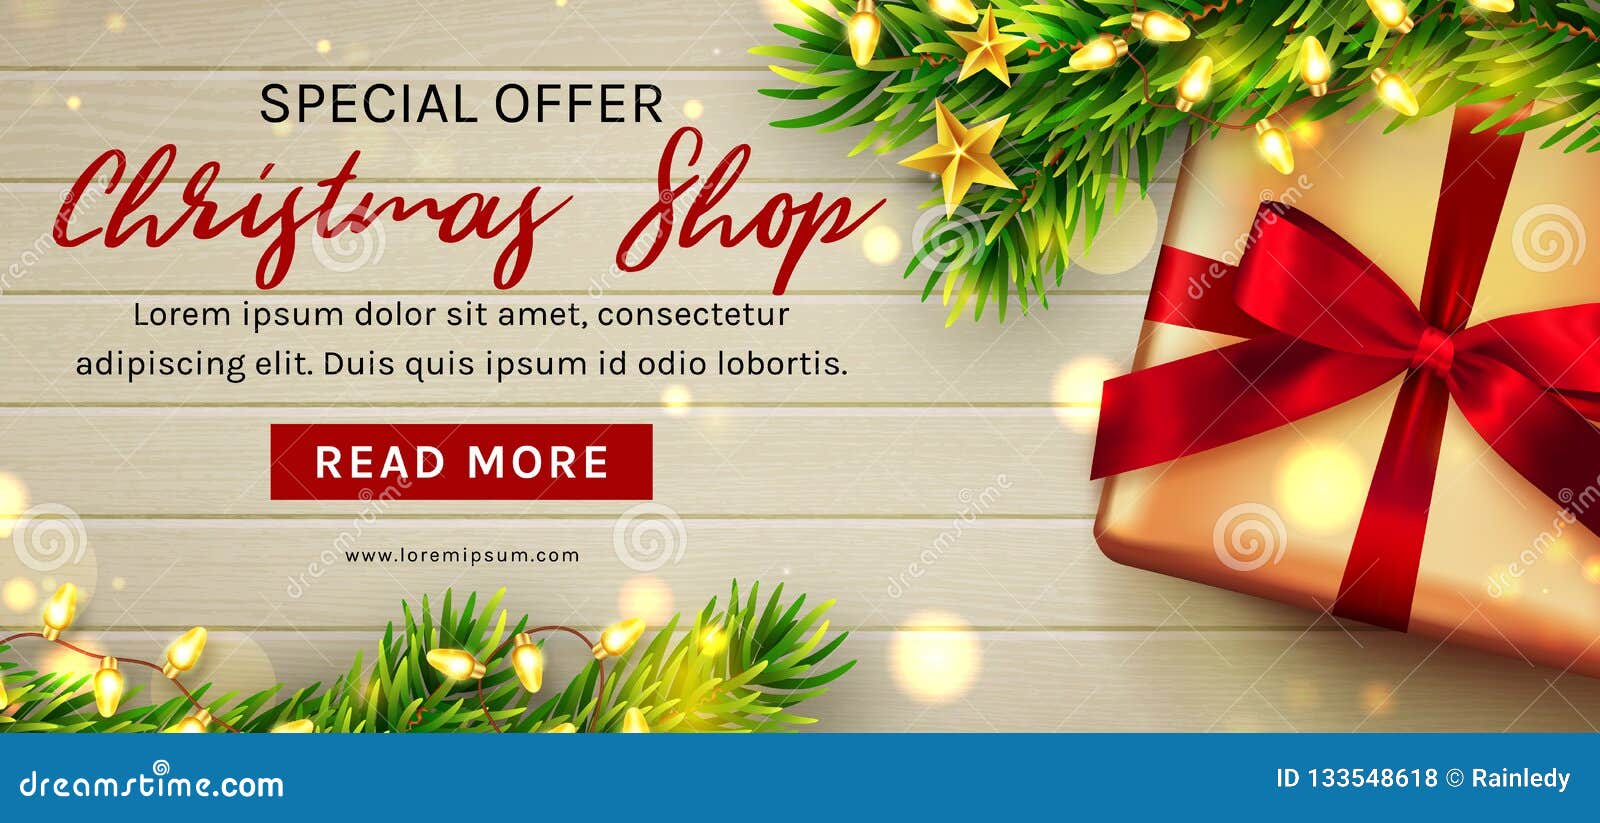 christmas sale web banner template. .